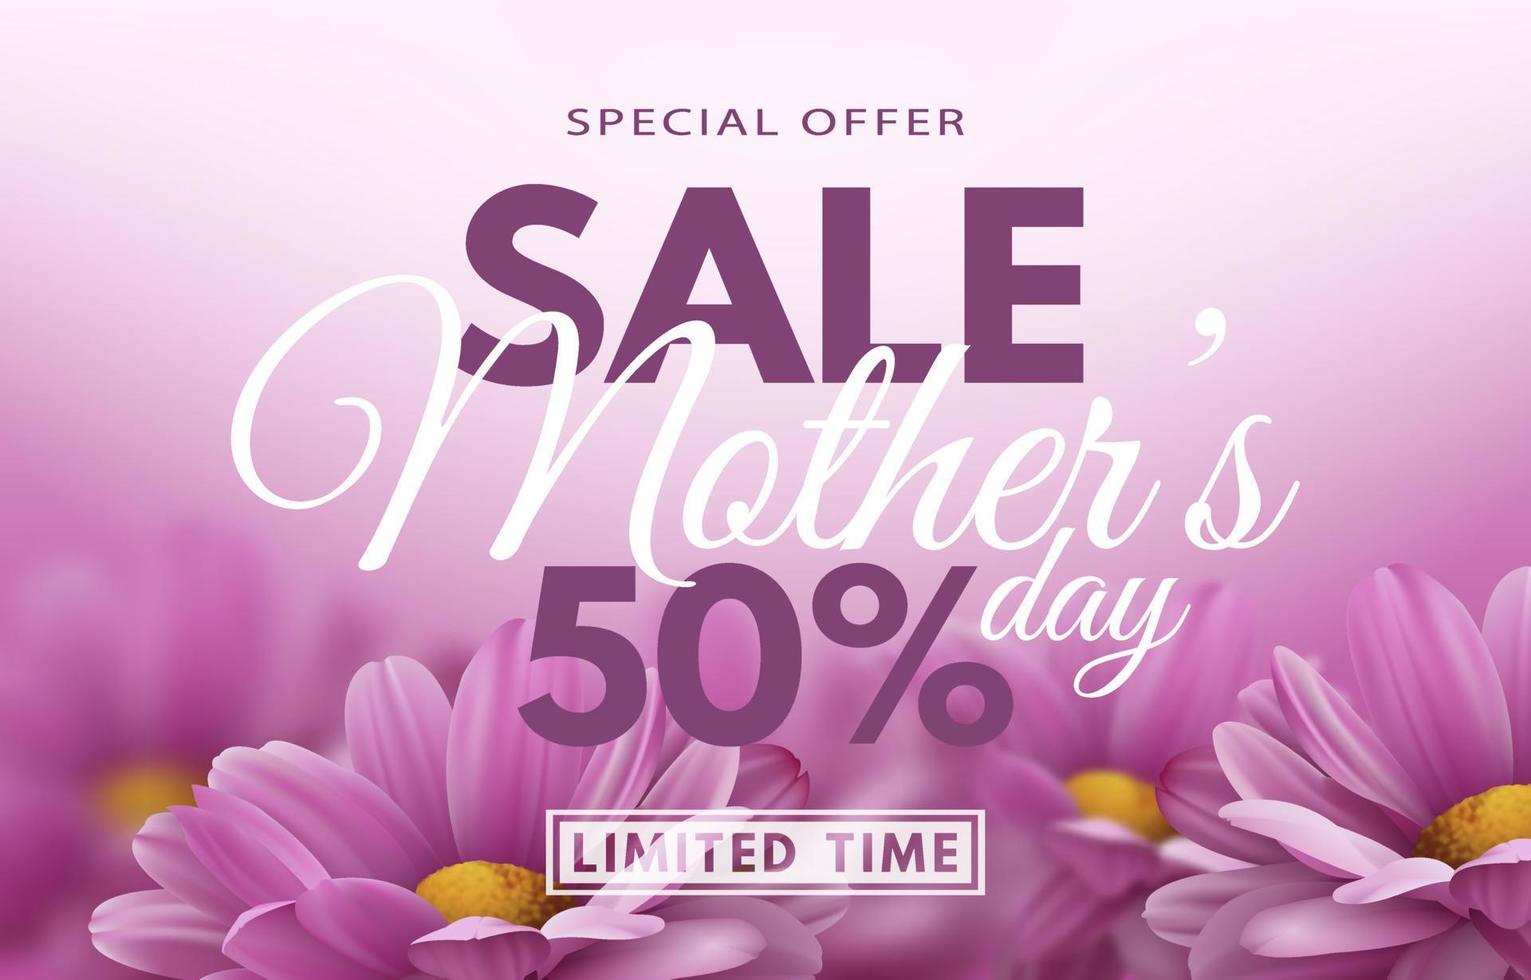 oferta especial. banner de venta del día de la madre con flores de crisantemo realistas y decoración de texto de descuento publicitario. ilustración vectorial vector